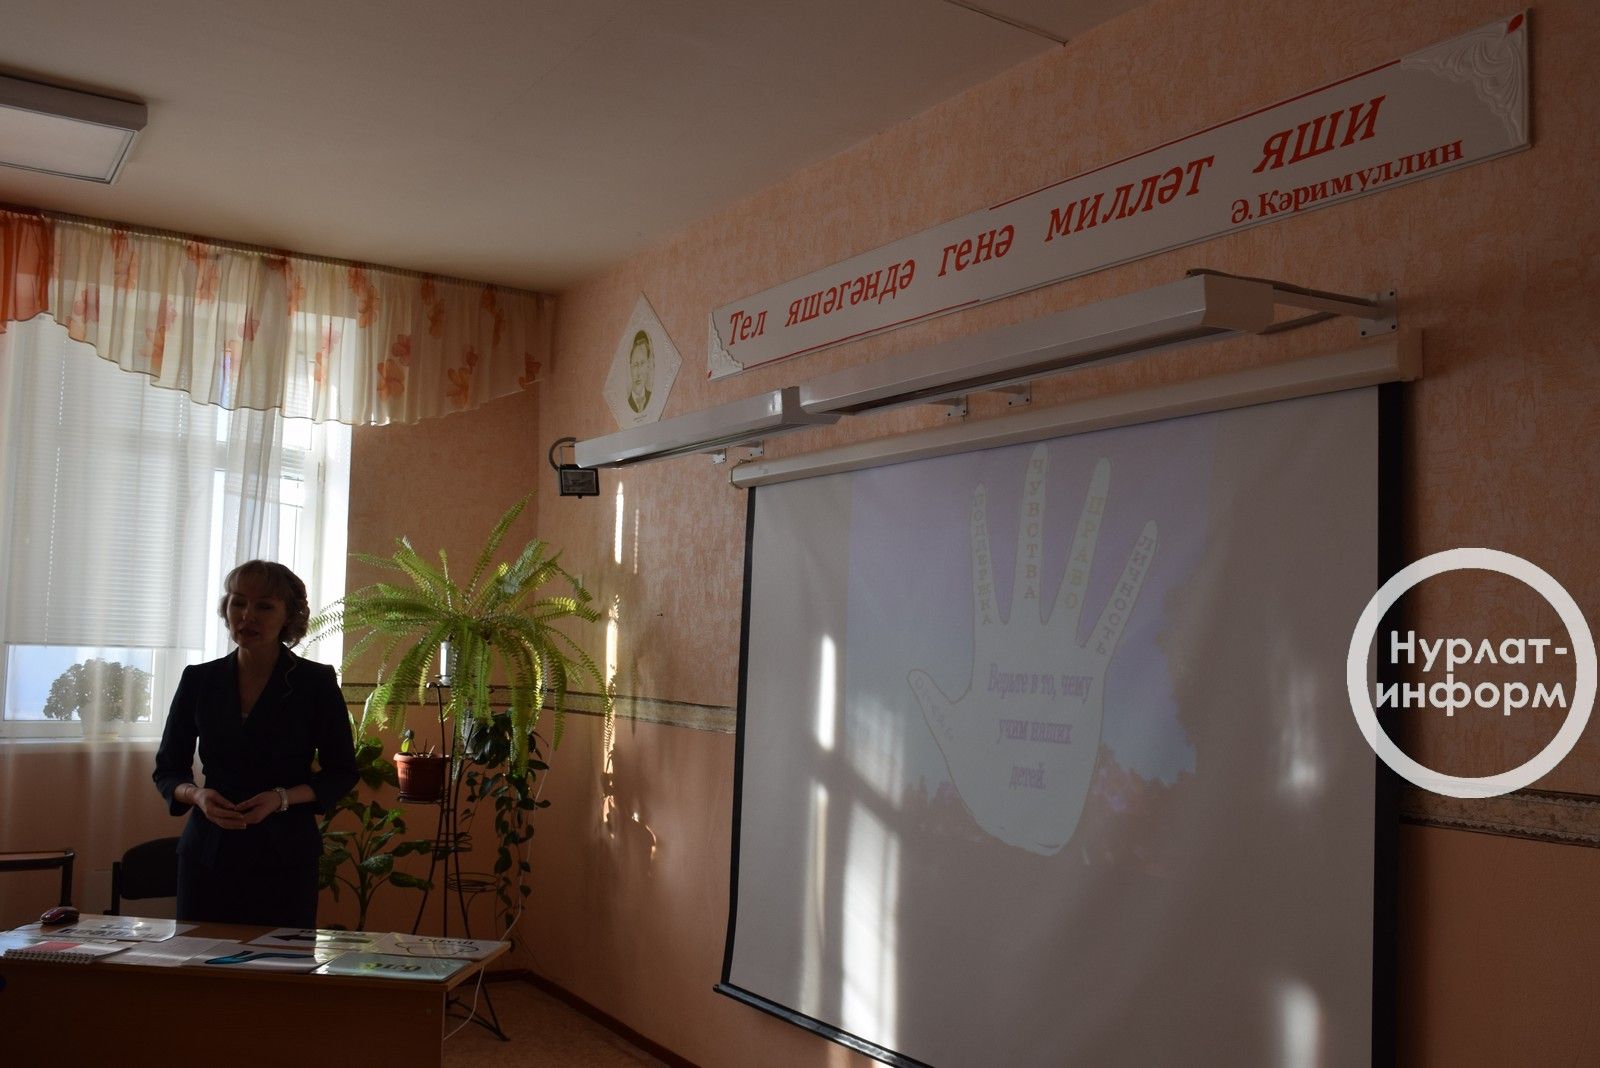 В Нурлате проходит семинар-совещание для учителей родного языка и литературы